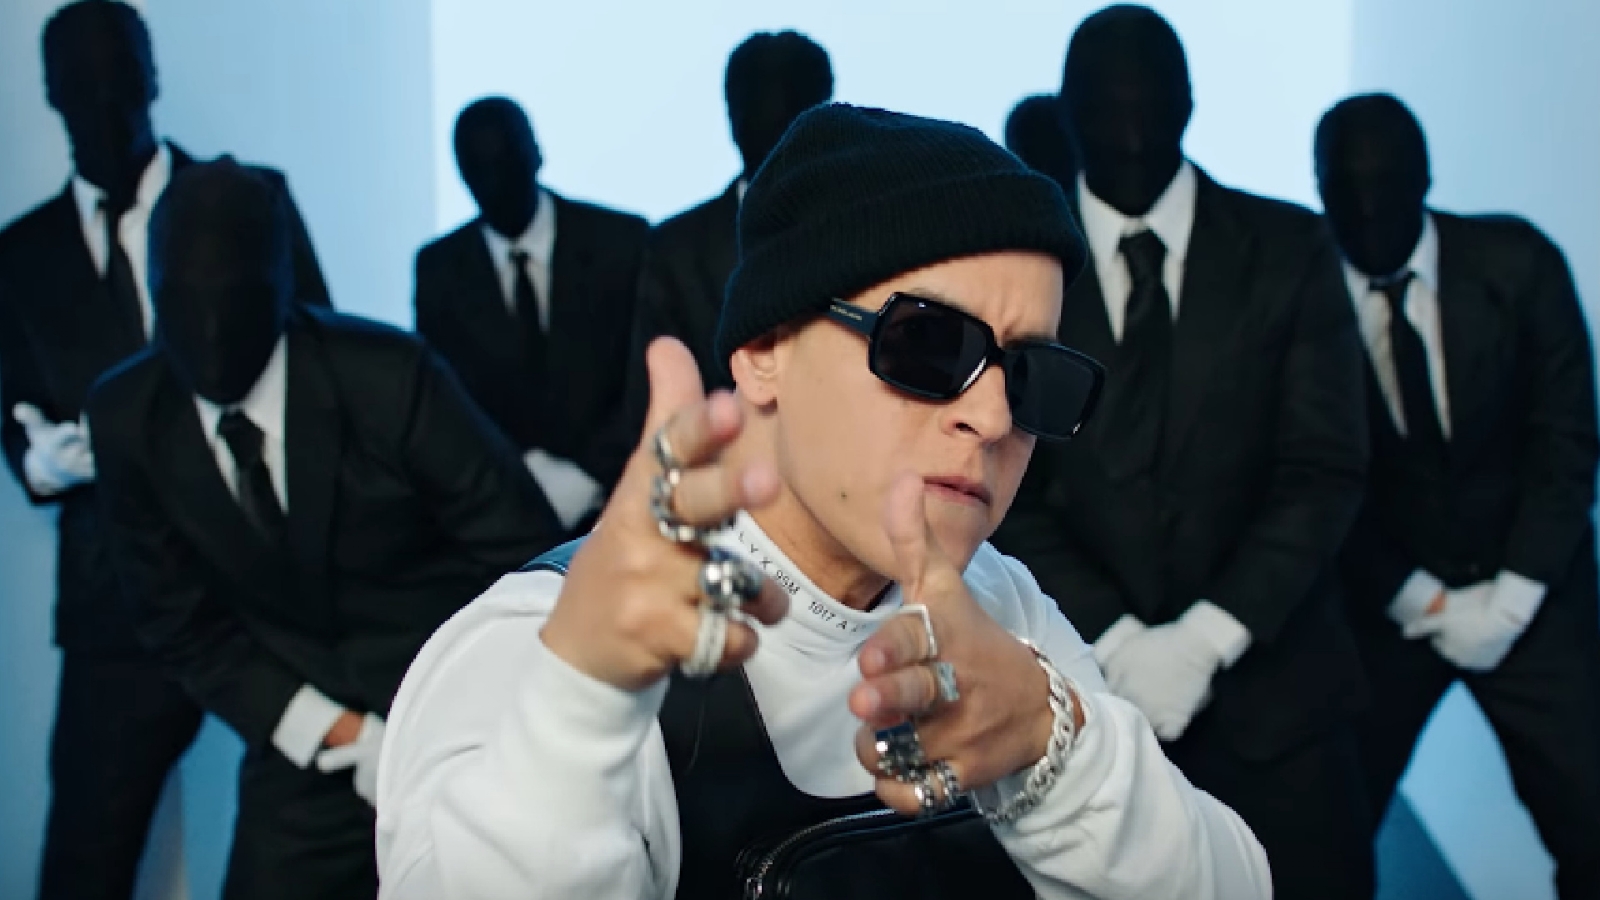 #ProblemaChallenge: La canción de Daddy Yankee que ha vuelto loco a las redes sociales